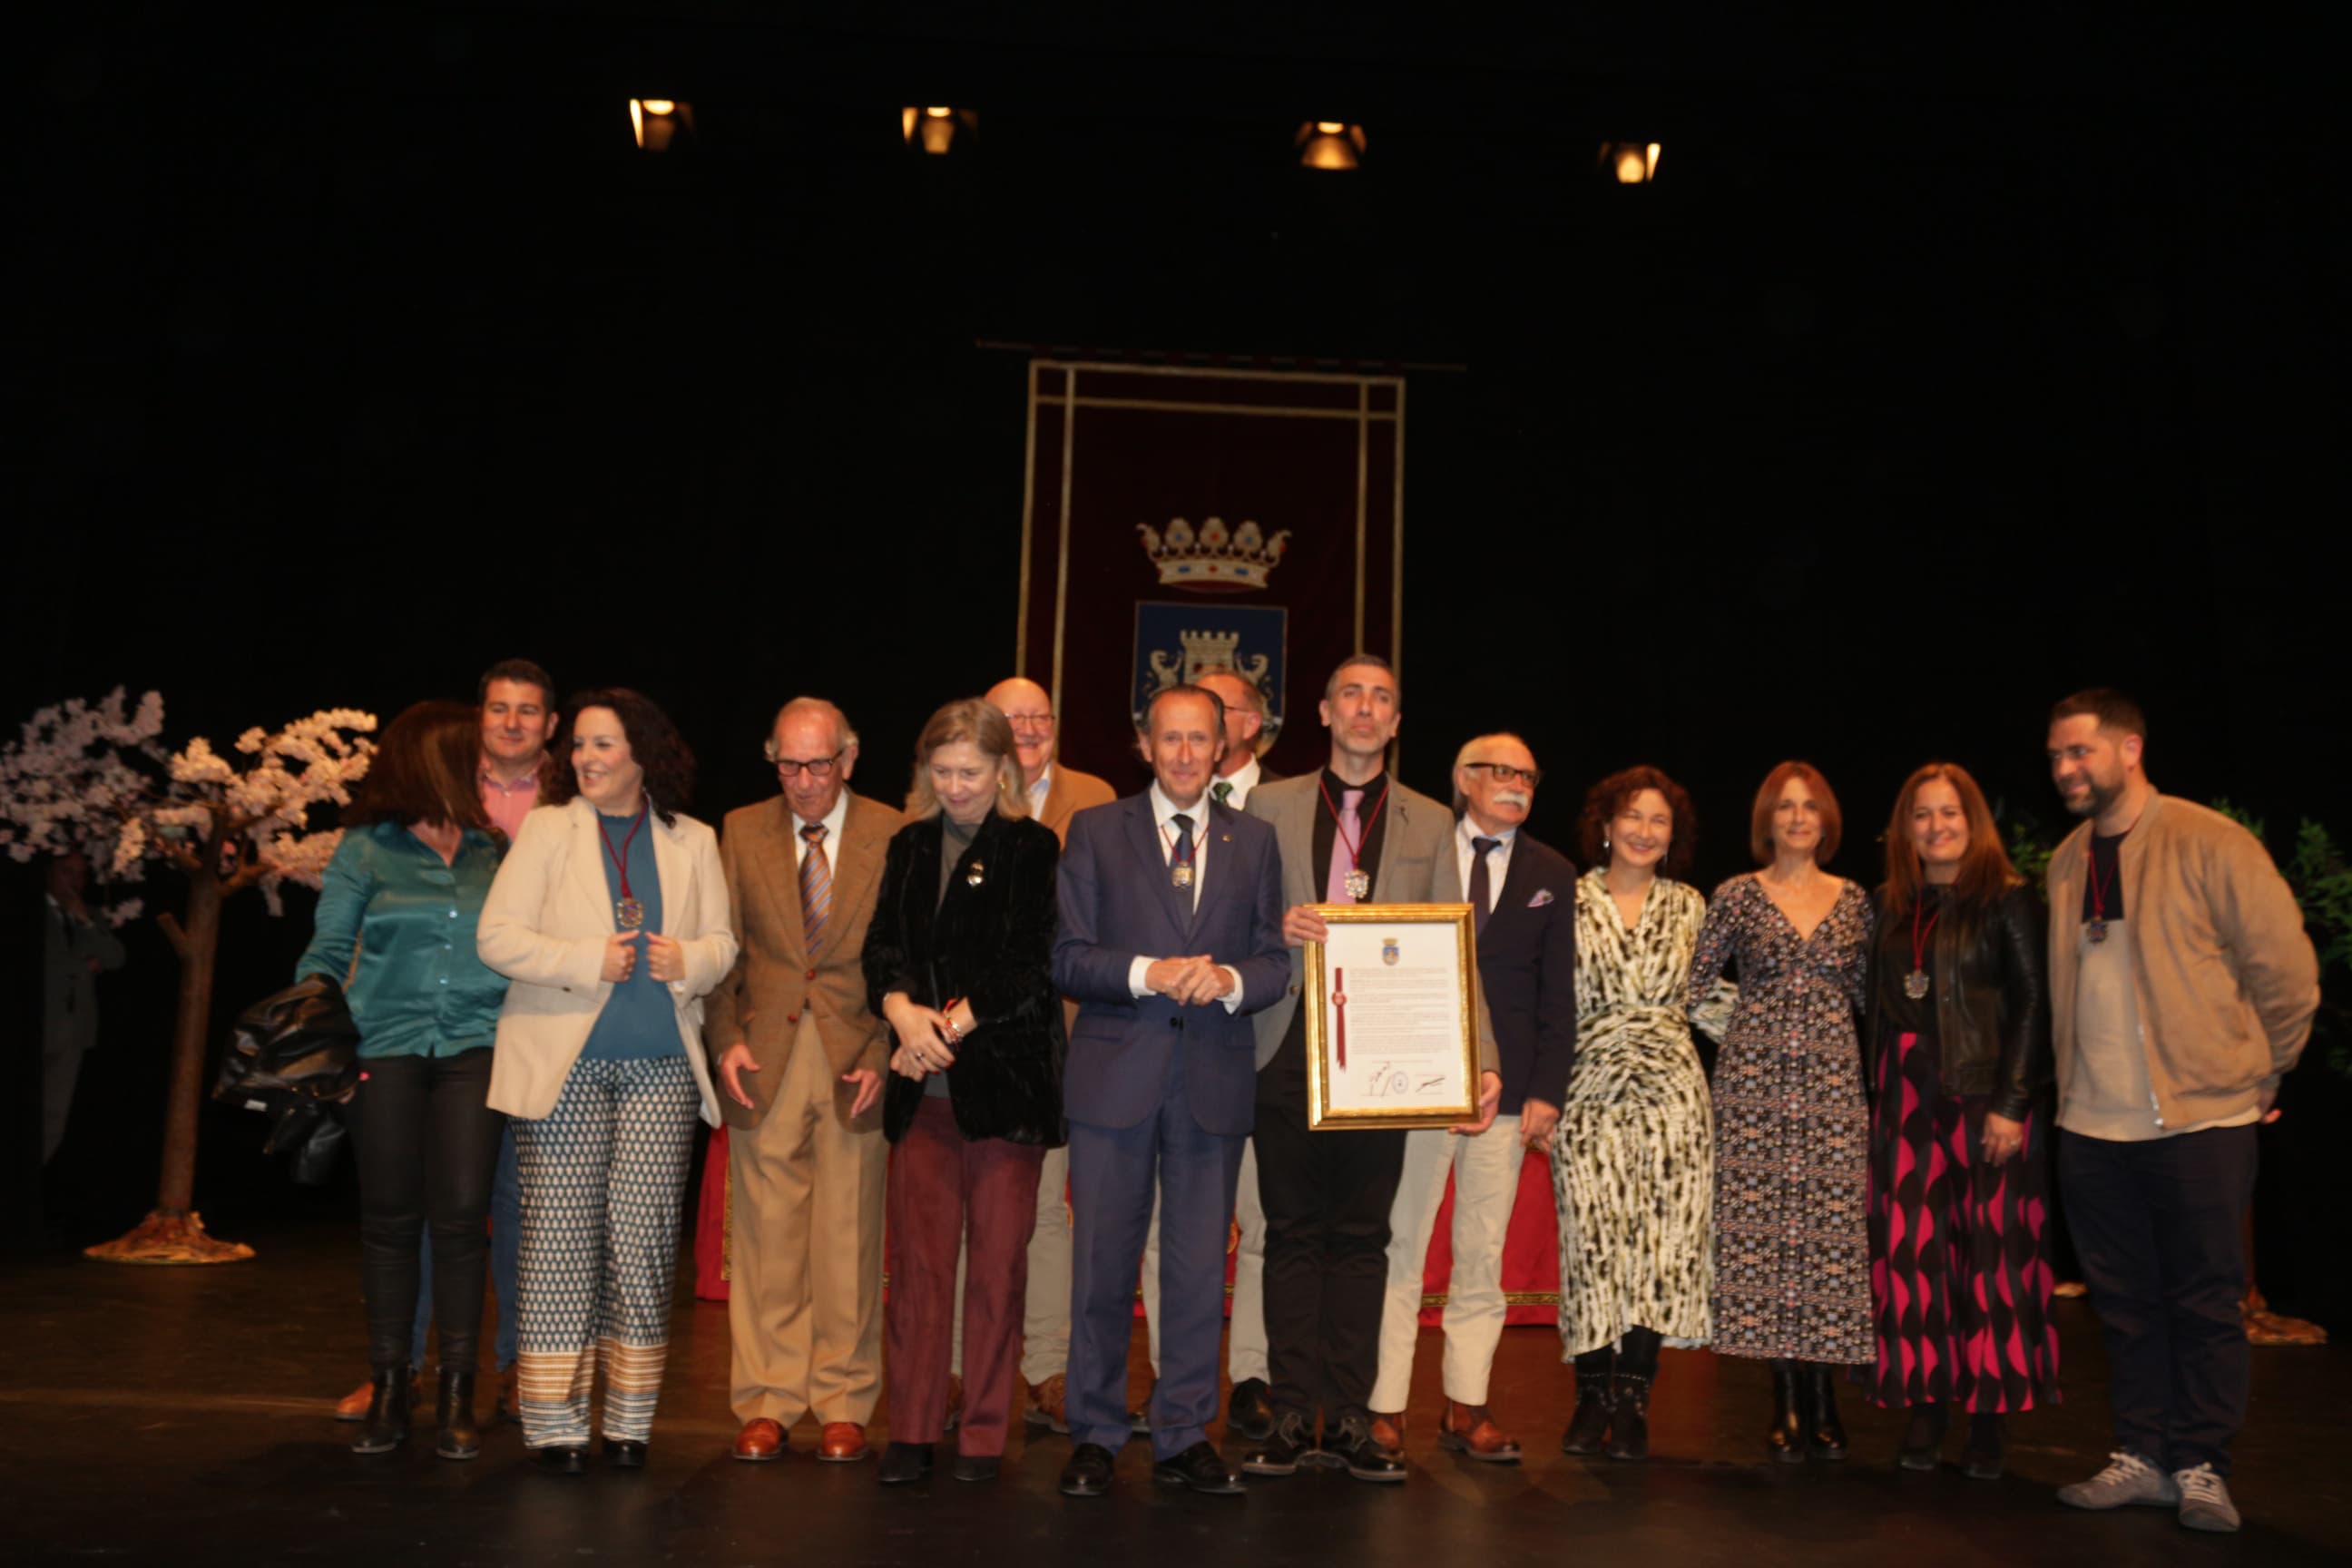 Medalla de Plata de Chiclana al CEIP José de la Vega por su 50 aniversario. El alcalde junto al director y profesorado.